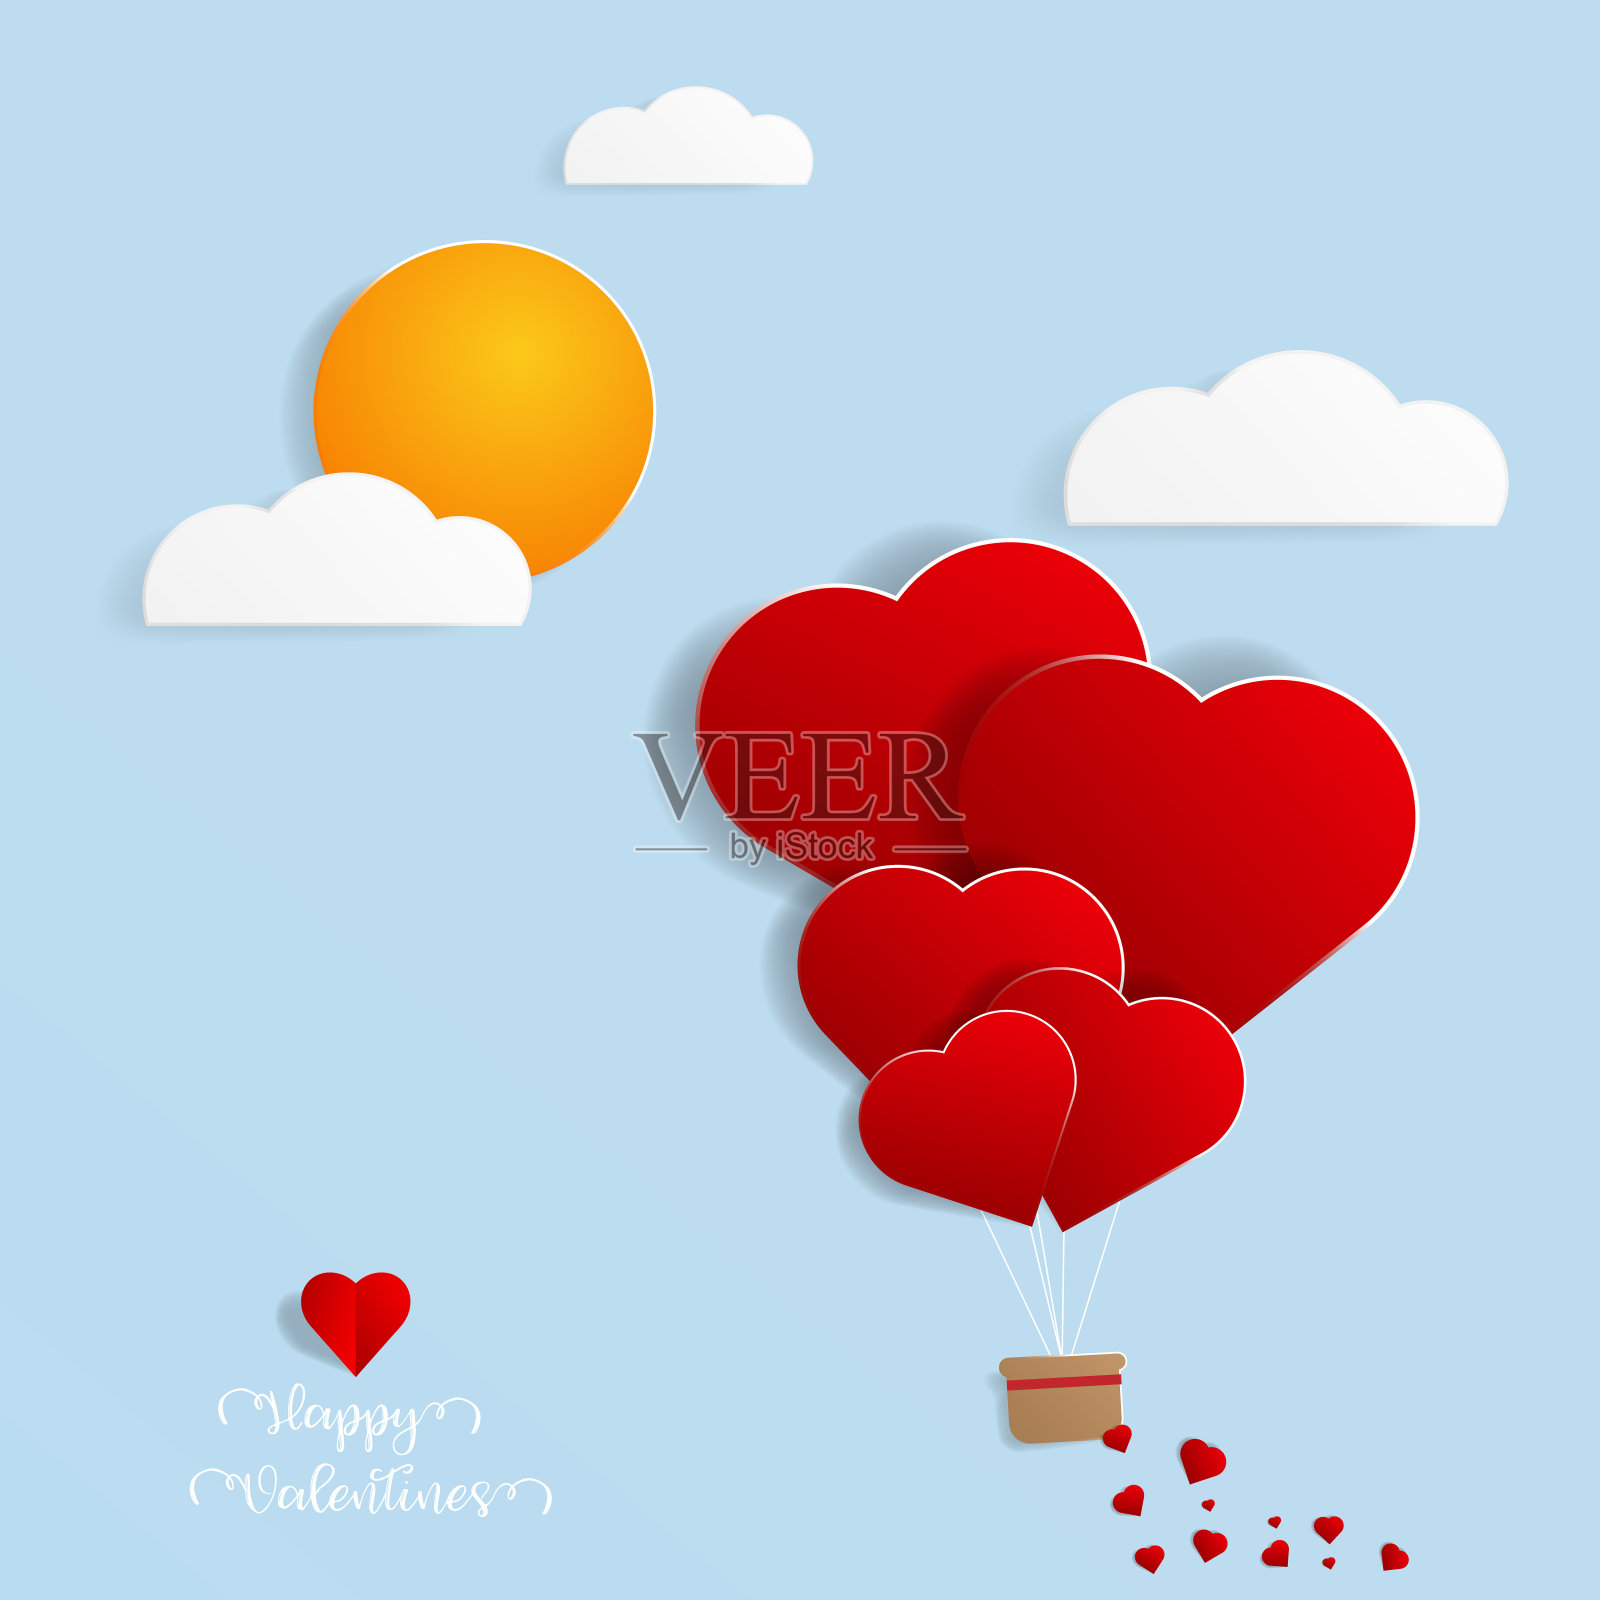 心形气球飞在天空剪纸风格插画图片素材